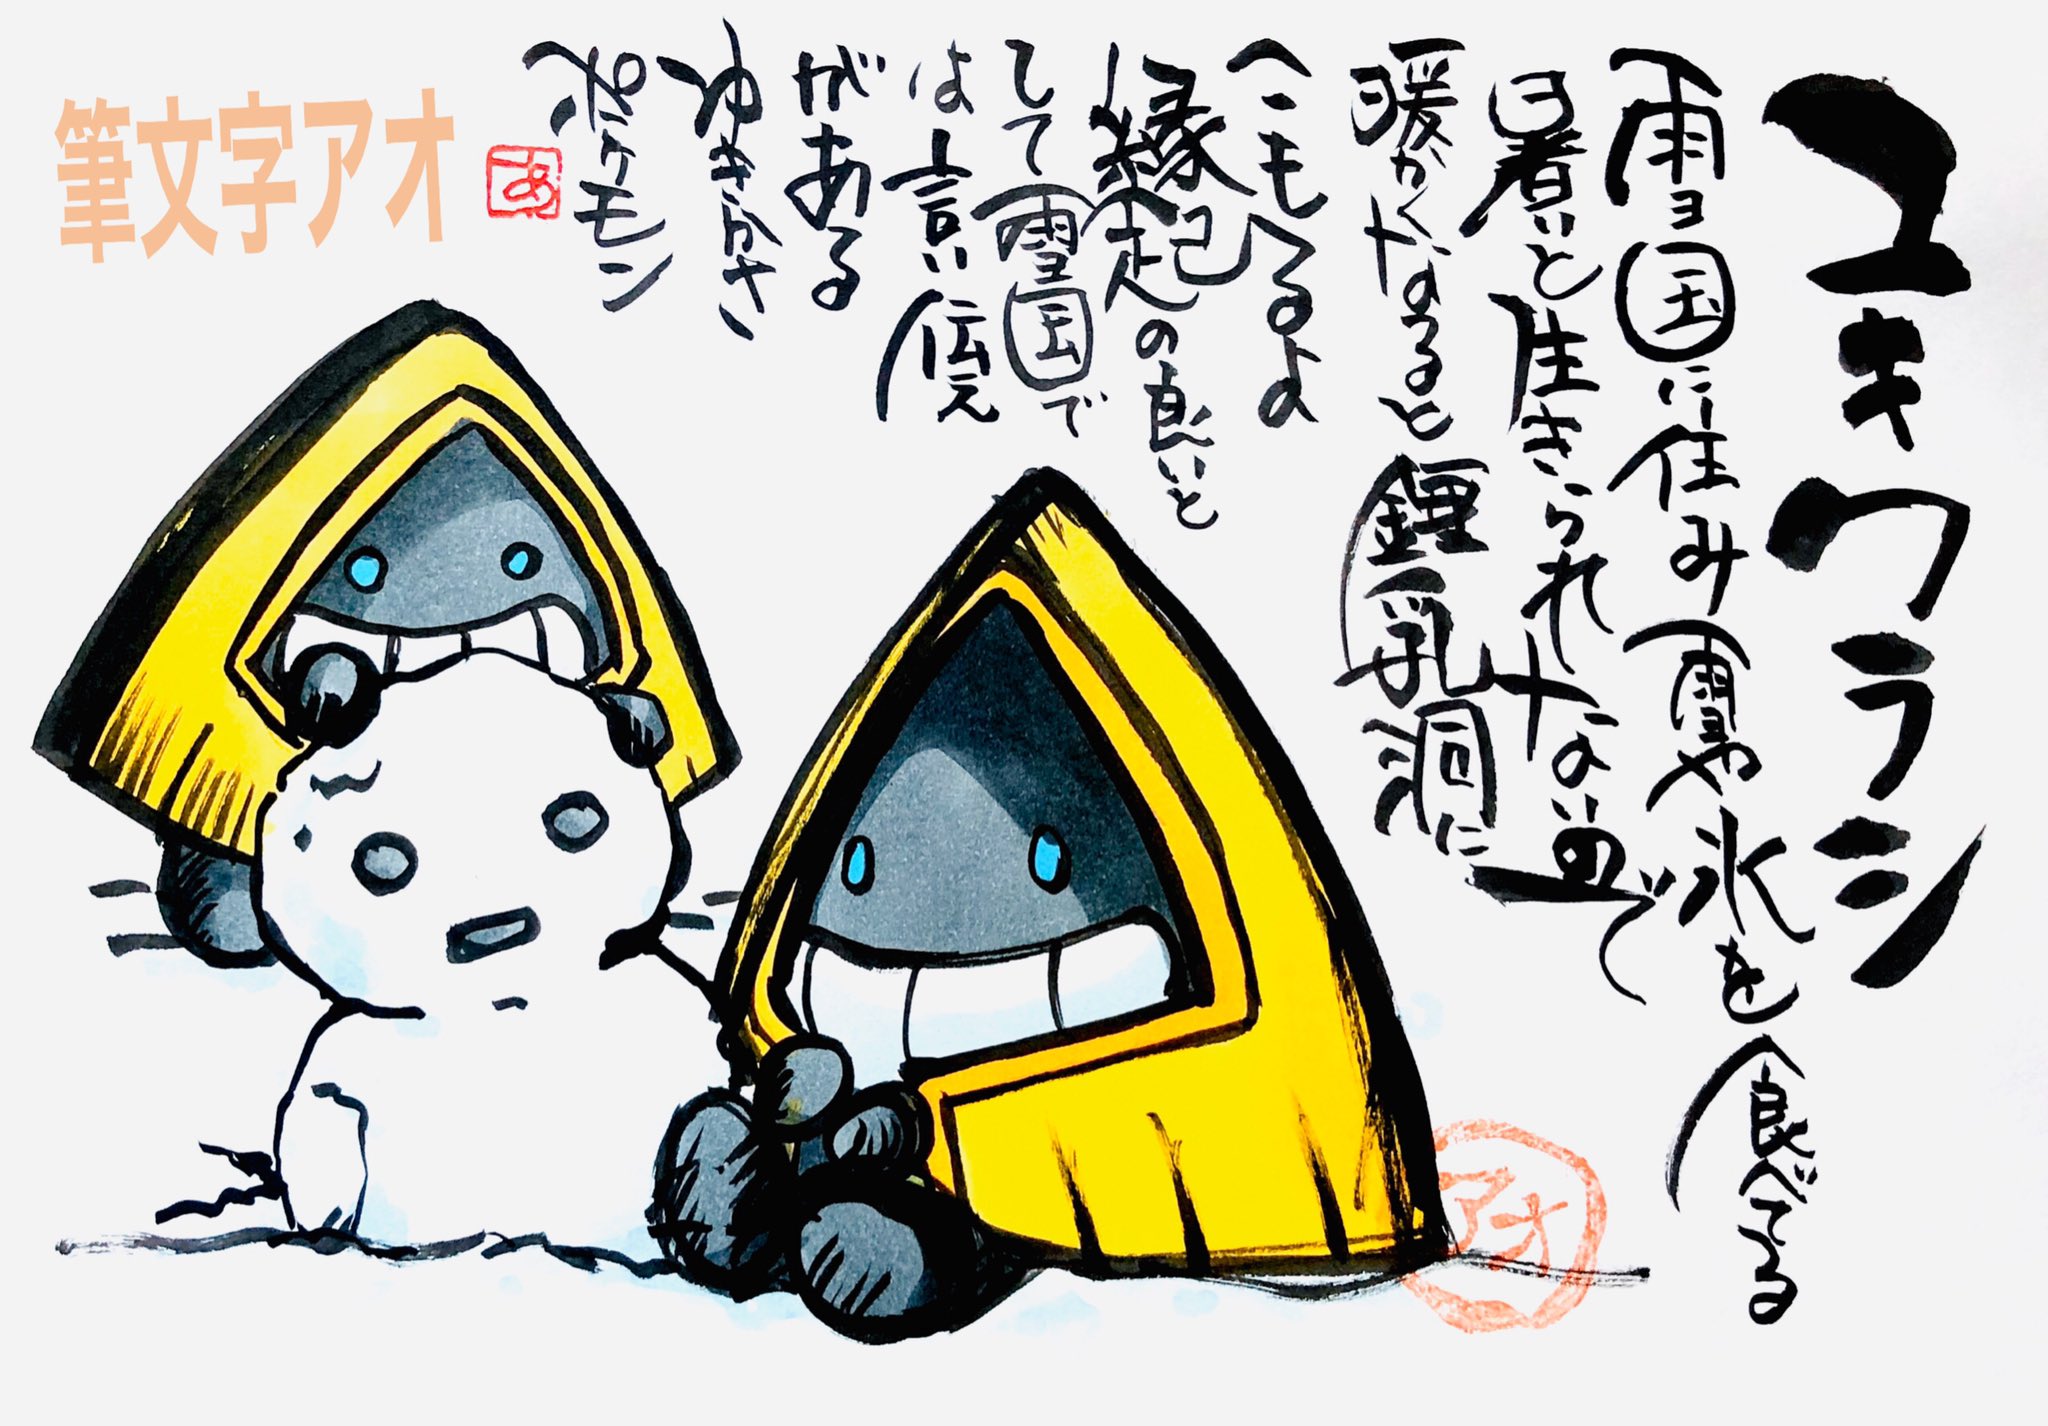 تويتر Aki Shimamoto ポケモン絵師休憩中エネルギーアートクリエーター على تويتر 筆ペンでポケモンを描く ユキワラシ 雪国に住み雪や氷を食べてる 暑いと生きていられないので 暖かくなると鍾乳洞にこもるよ 縁起の良いとして雪国では 言い伝えがあるゆきかさ